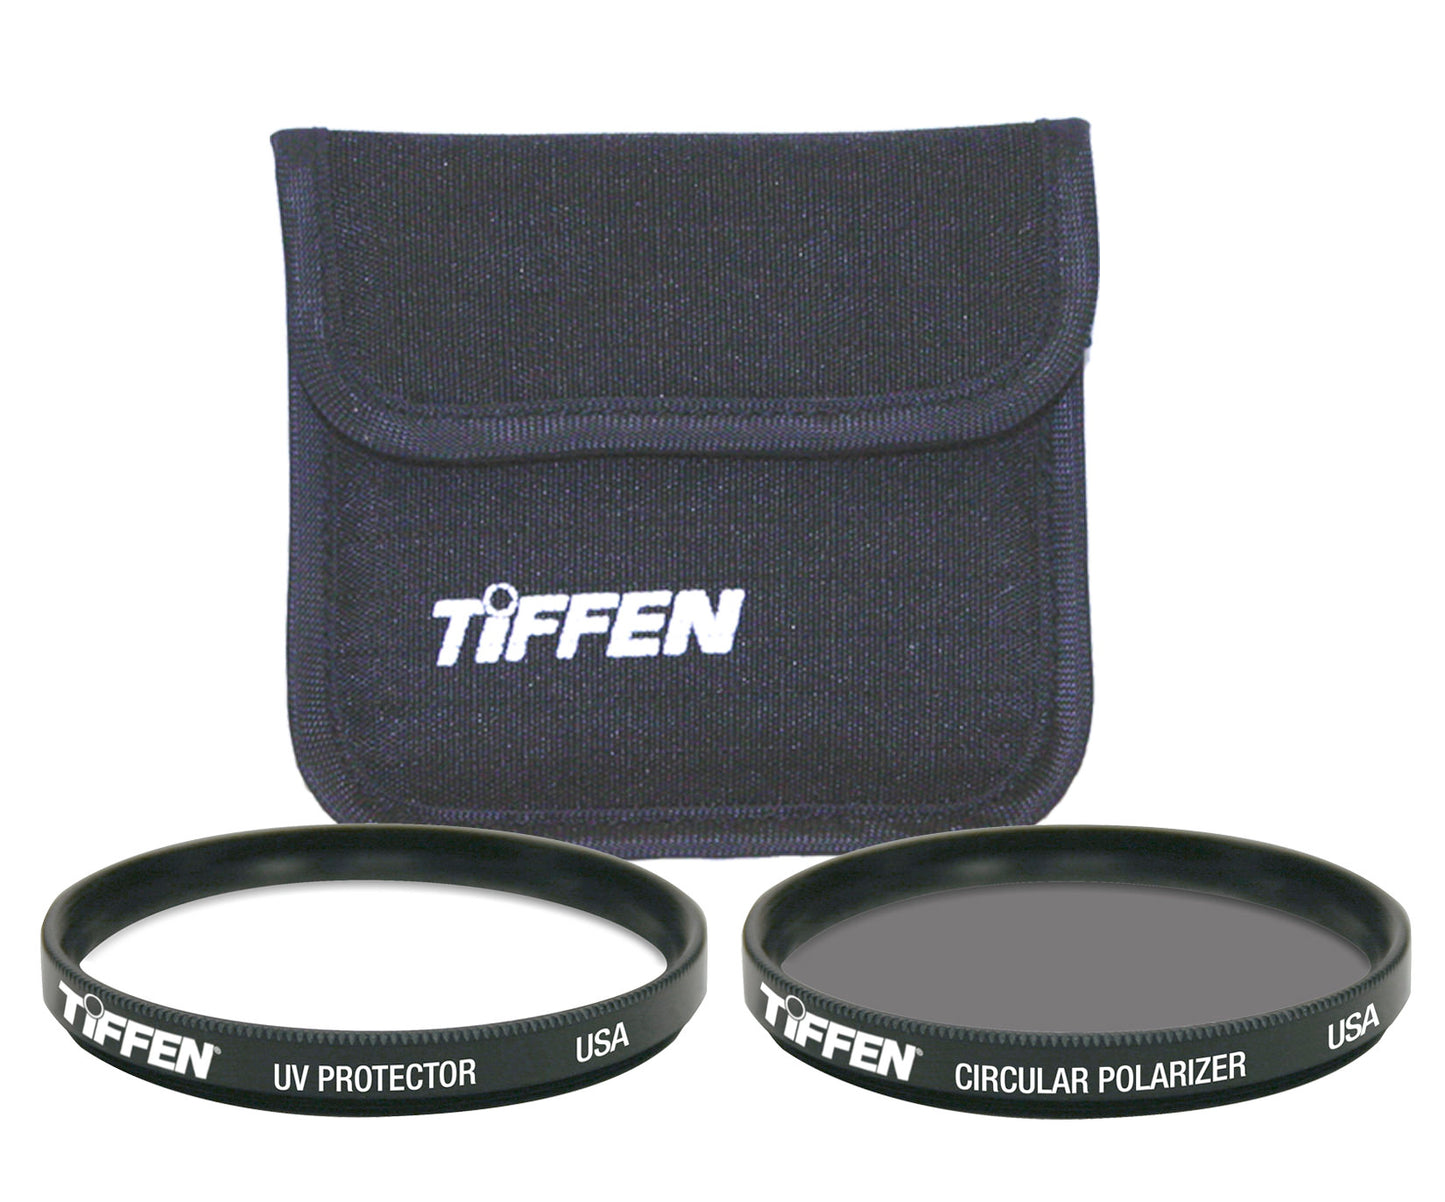 TIFFEN ティッフェン 62mm UV PROTECTOR USA アメリカ